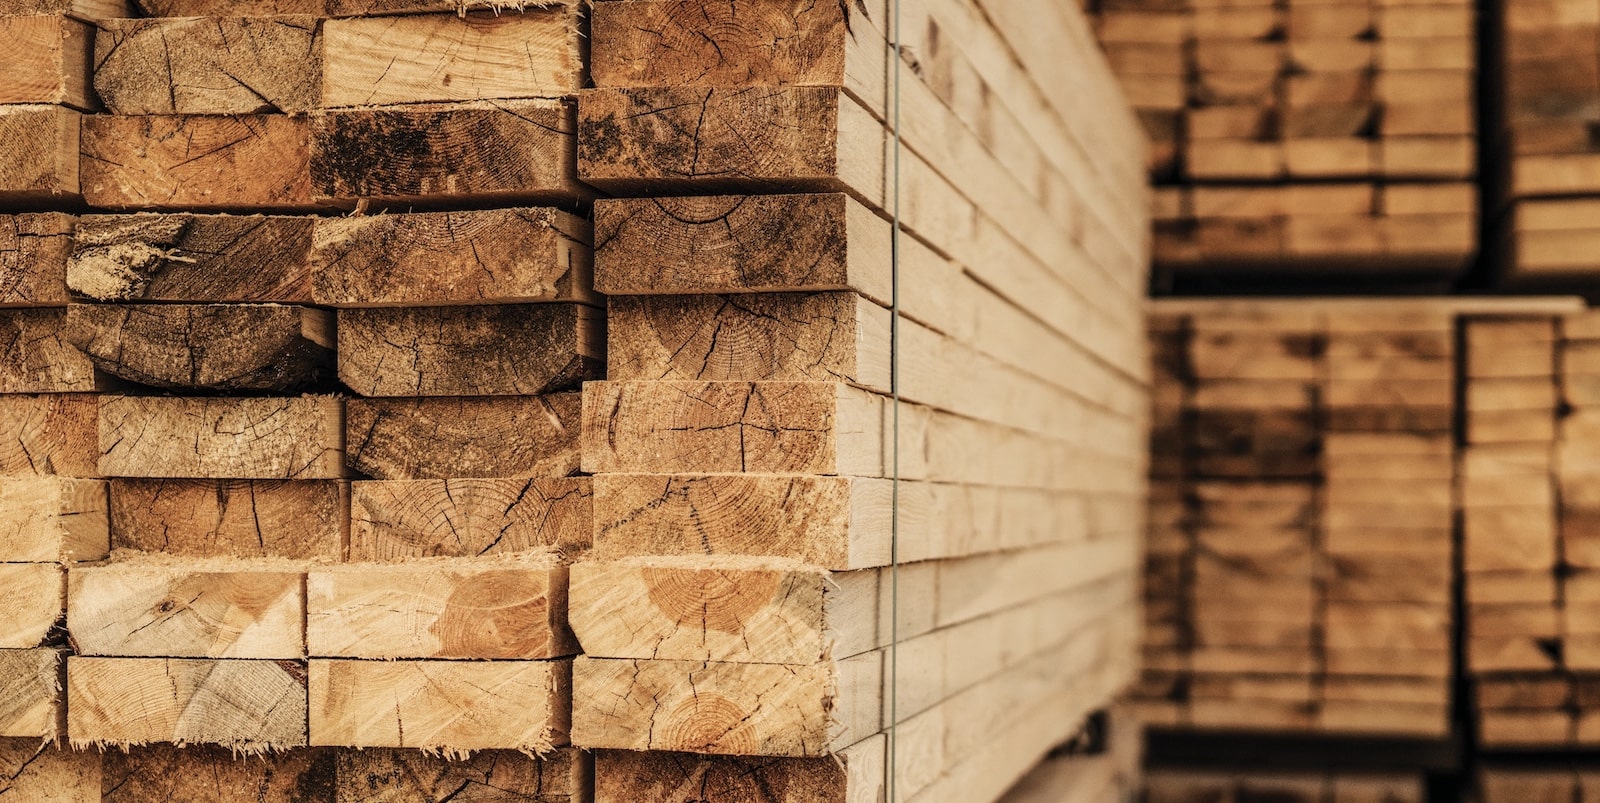 Stacks of lumber